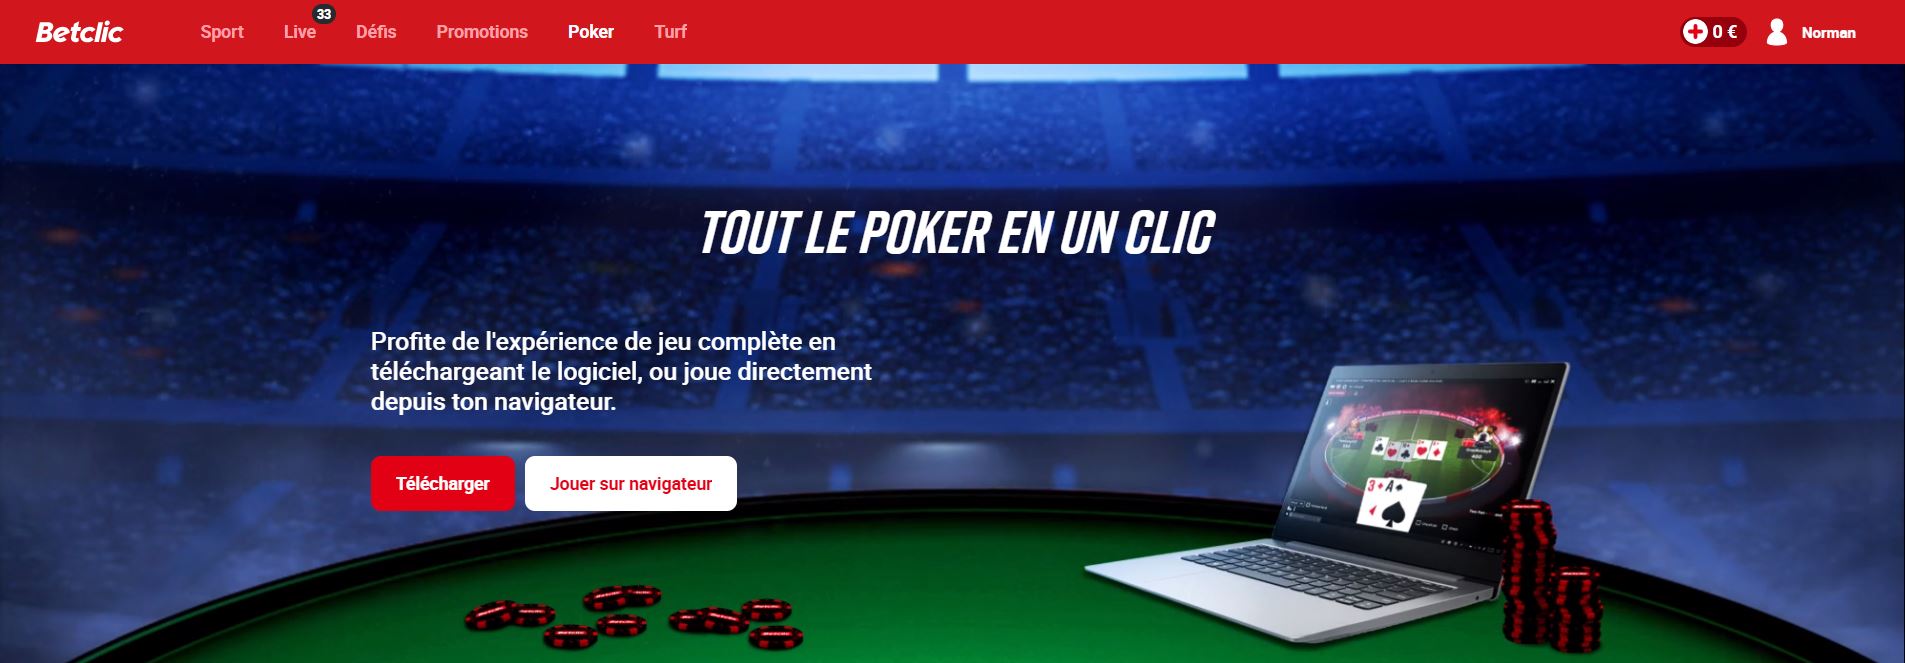 Betclic - Poker - Casino PayPal